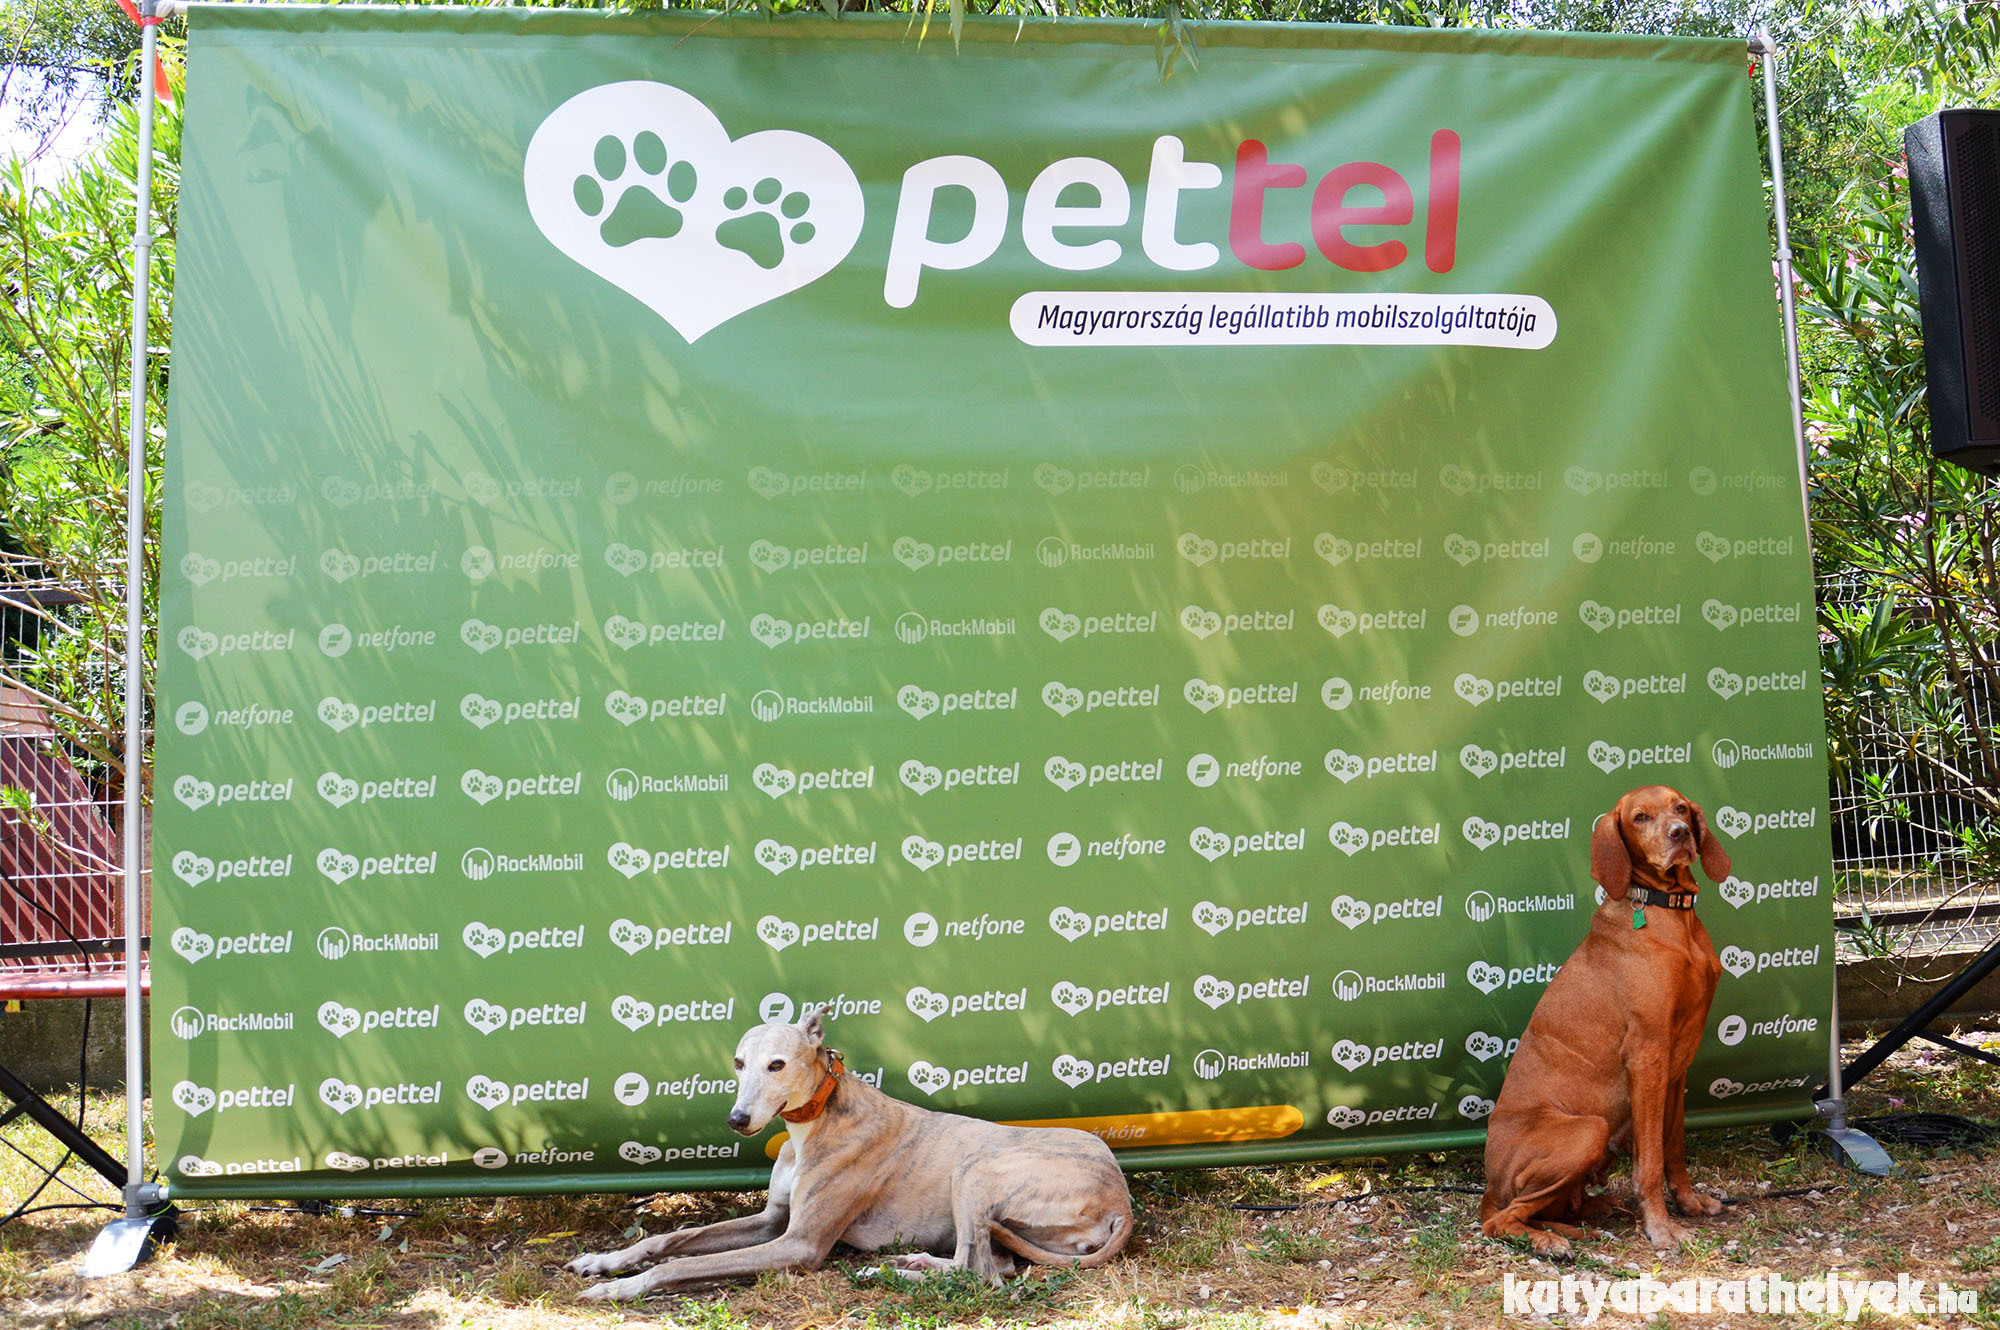 Pettel projekt: a mobiloddal is segíthetsz az árva állatokon!